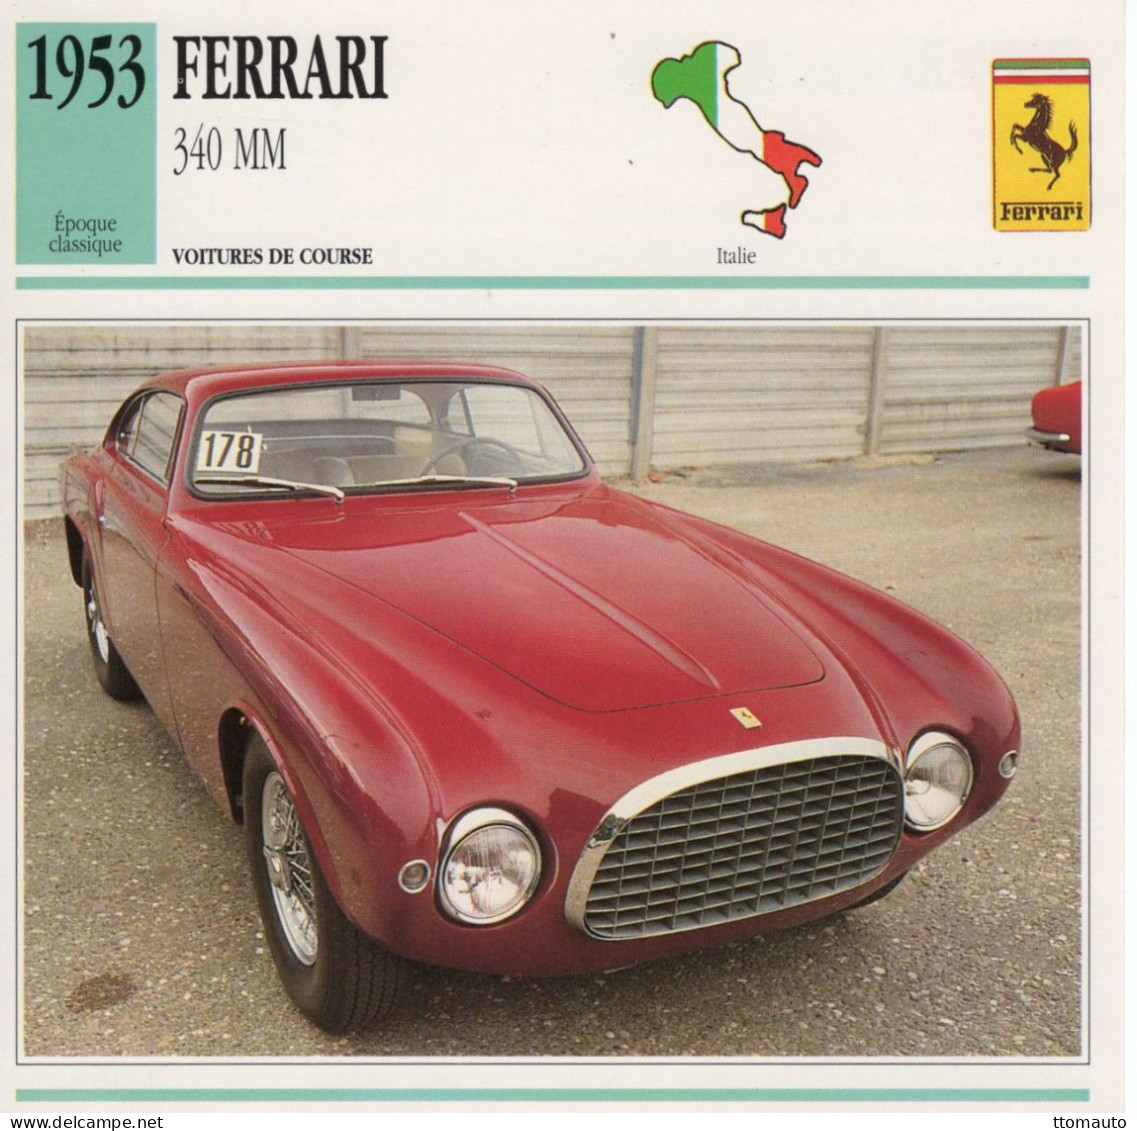 Ferrari 340 MM -  1953 - Voiture De Course -  Fiche Technique Automobile (I) - Voitures